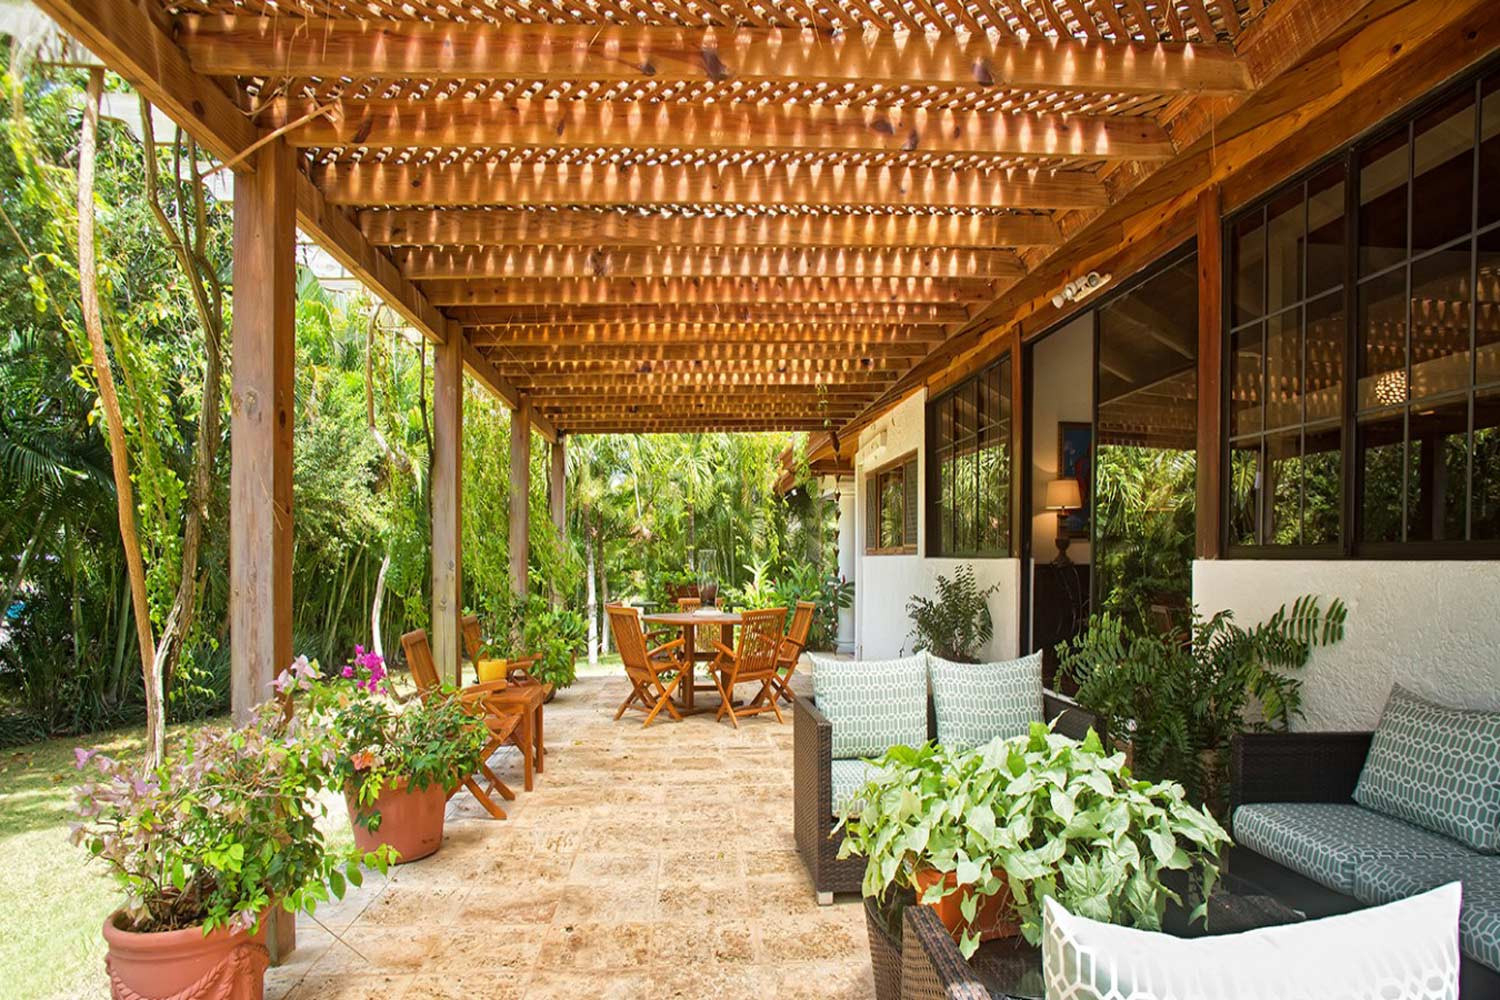 Casa De Campo - Dominican Republic - Garden Villas encequiconcerne Jardines De Casas De Campo